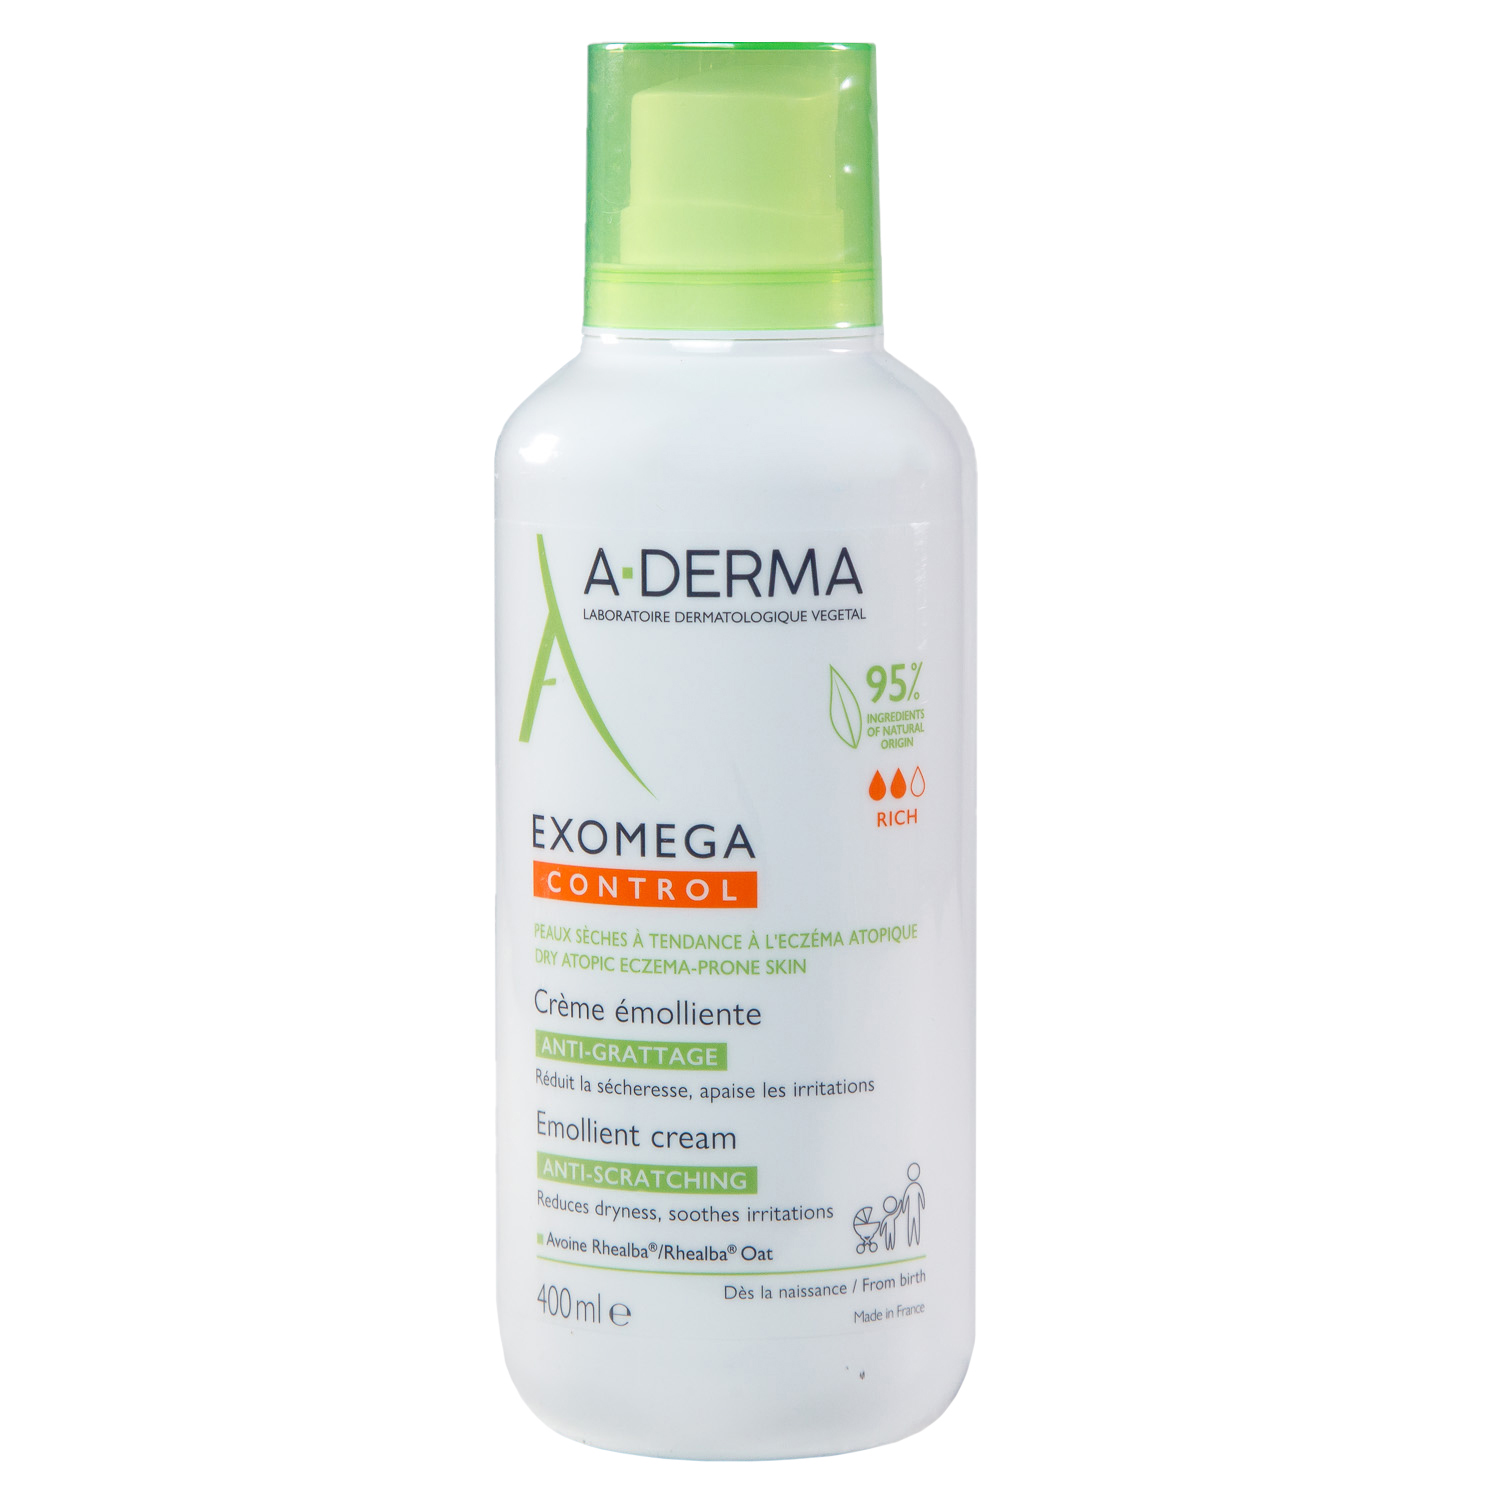 A-Derma Смягчающий крем для лица и тела, 400 мл (A-Derma, Exomega Control) карталин крем эмолент для ежедневного ухода за сухой и очень сухой кожей 300 мл